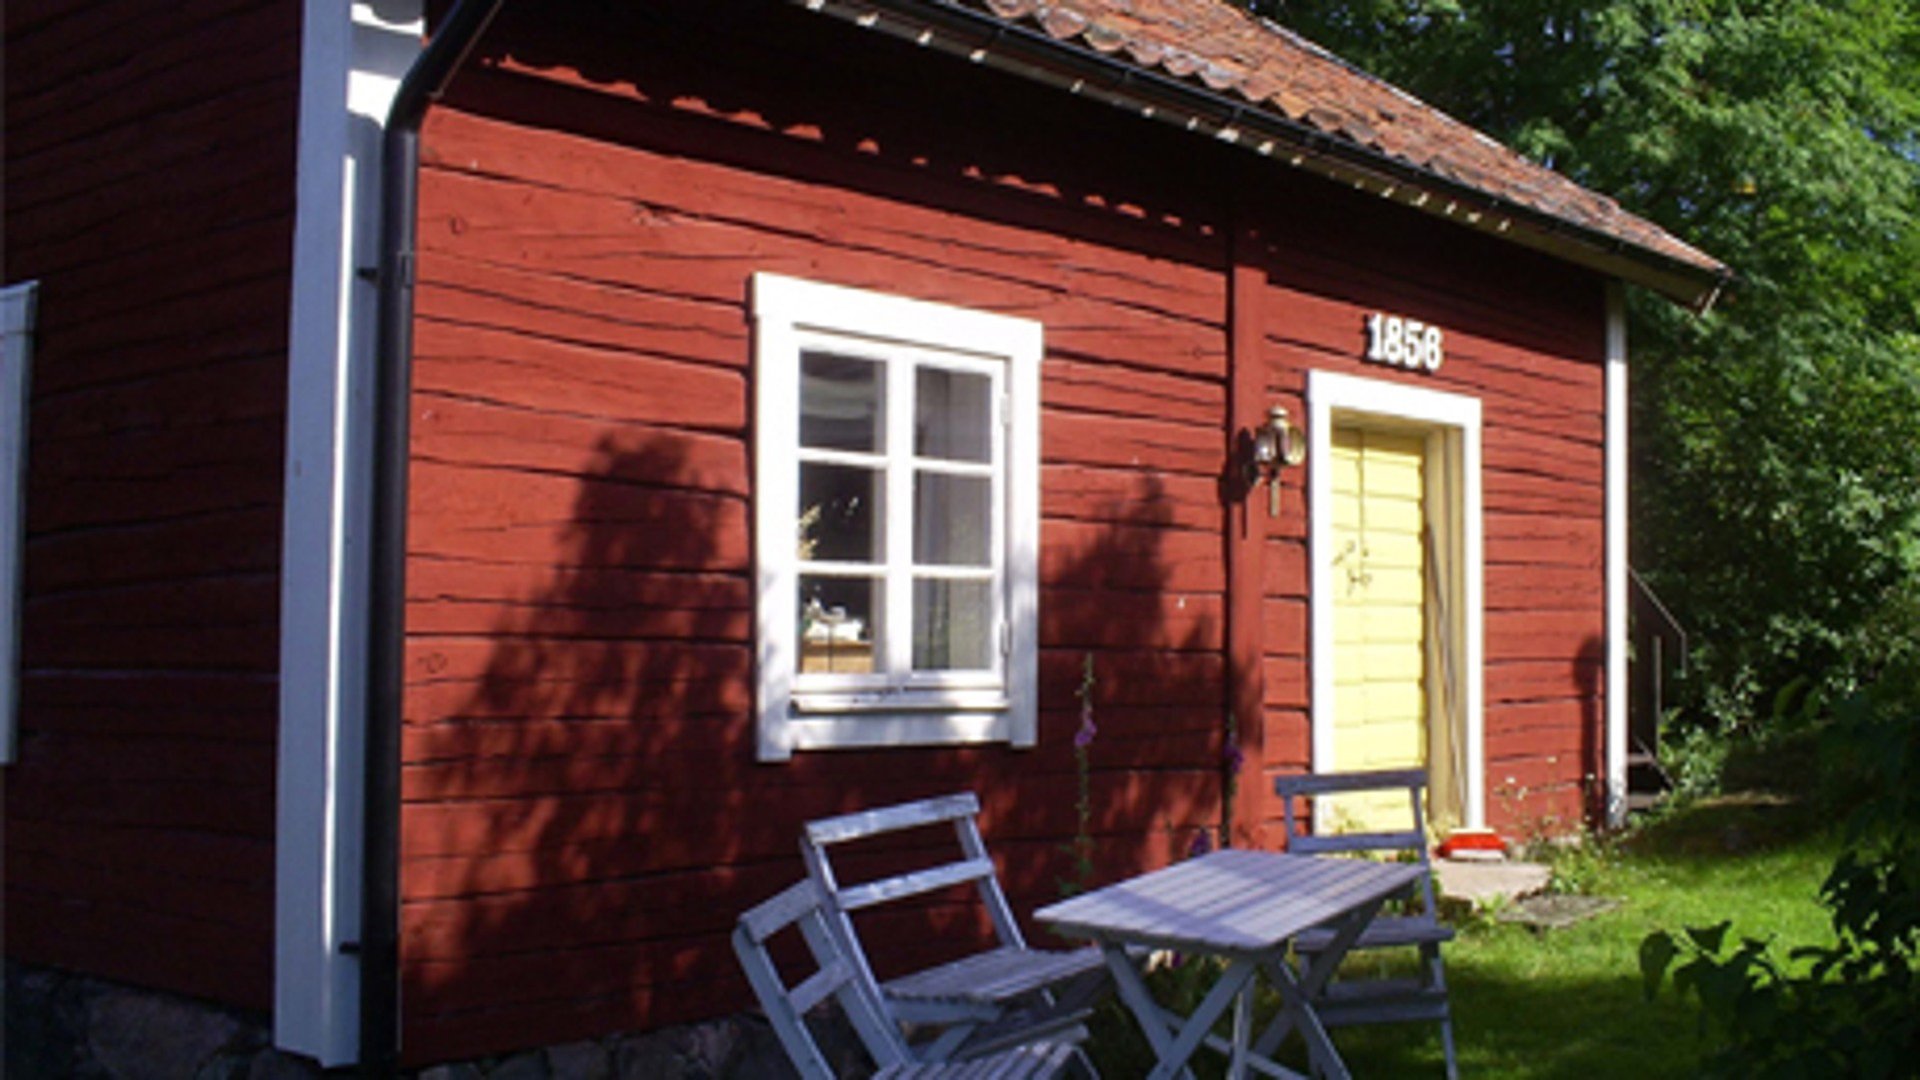 Ett rött trähus med vita knutar, ett fönster och en gul dörr. Ovanför dörren står det 1858 i vitt. Framför fönstret står vita utemöbler i trä. Solen lyser på huset och skuggan av ett träd syns. 